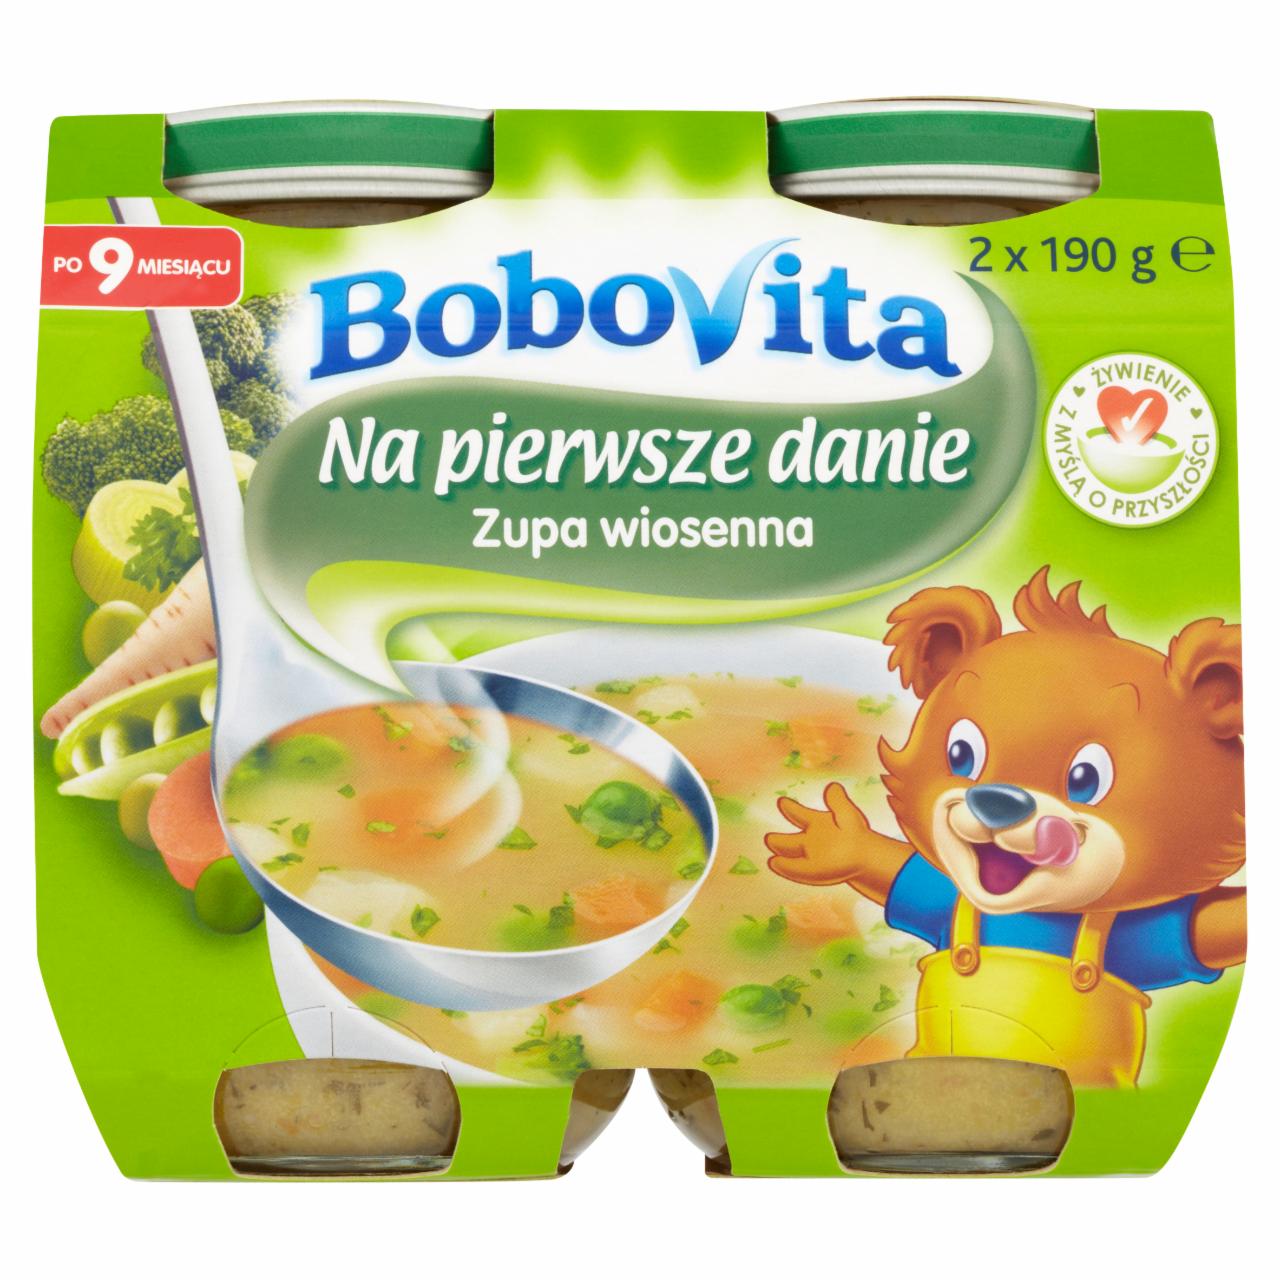 Zdjęcia - BoboVita Na pierwsze danie Zupa wiosenna po 9 miesiącu 2 x 190 g